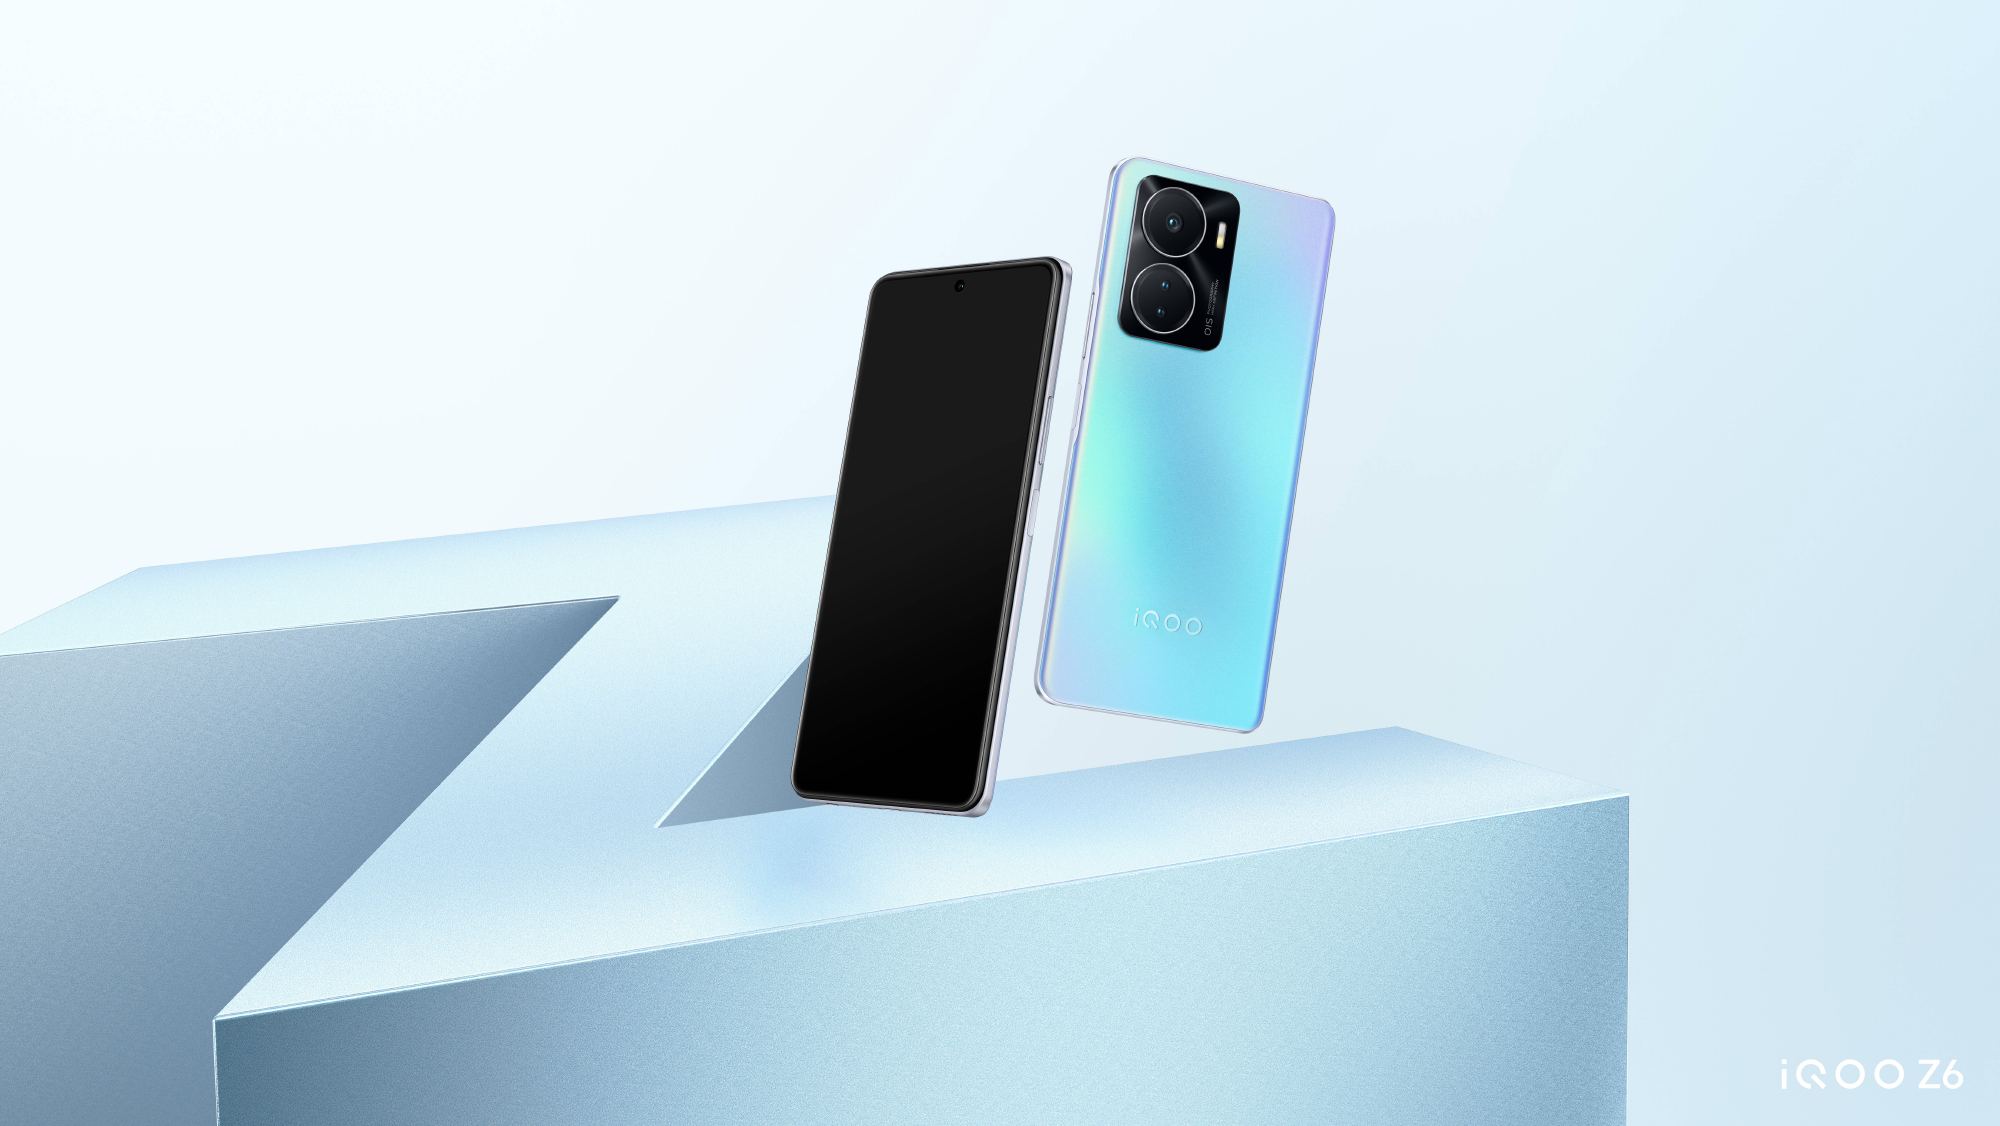 vivo ha presentato lo smartphone iQOO Z6 con chip Snapdragon 778G+ e ricarica rapida da 80 W per $ 250